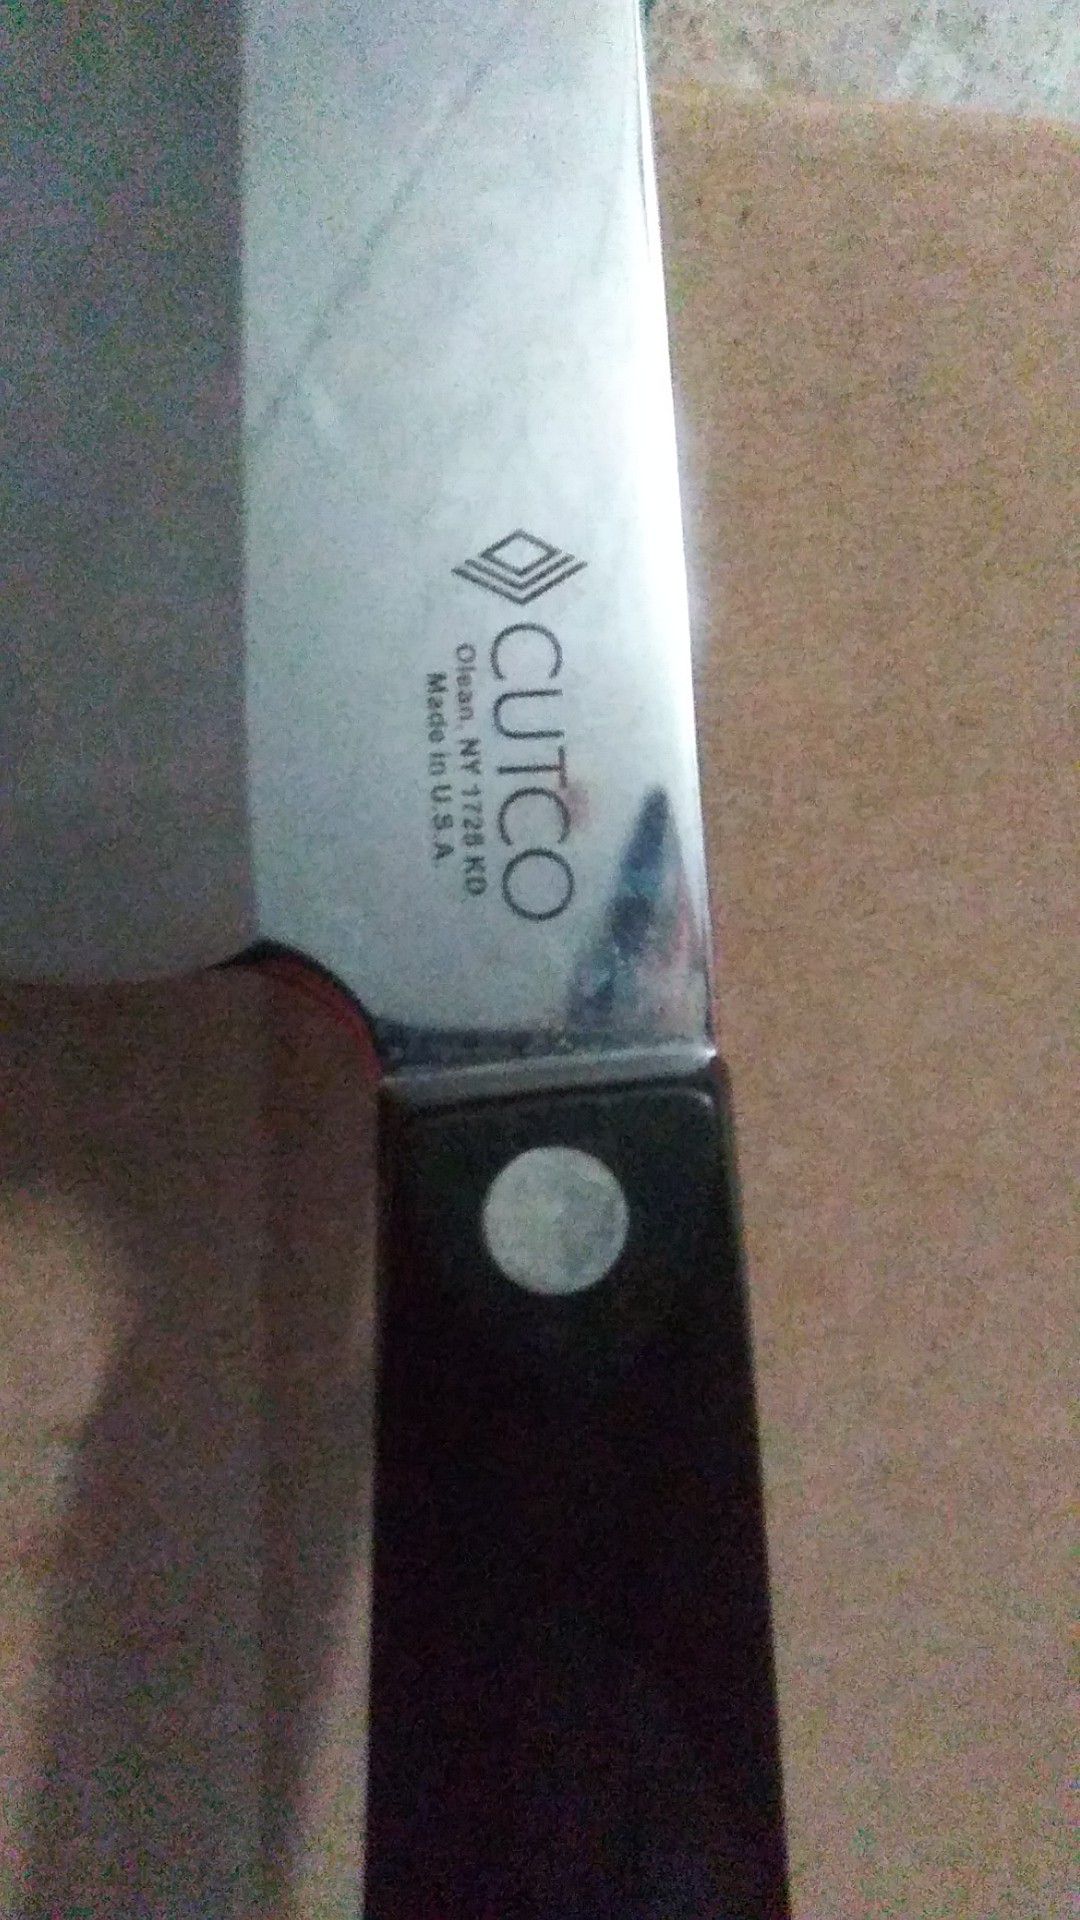 CUTCO CLASSIC 1728 KB PETITE CHEF KNIFE for Sale in Lutz, FL - OfferUp